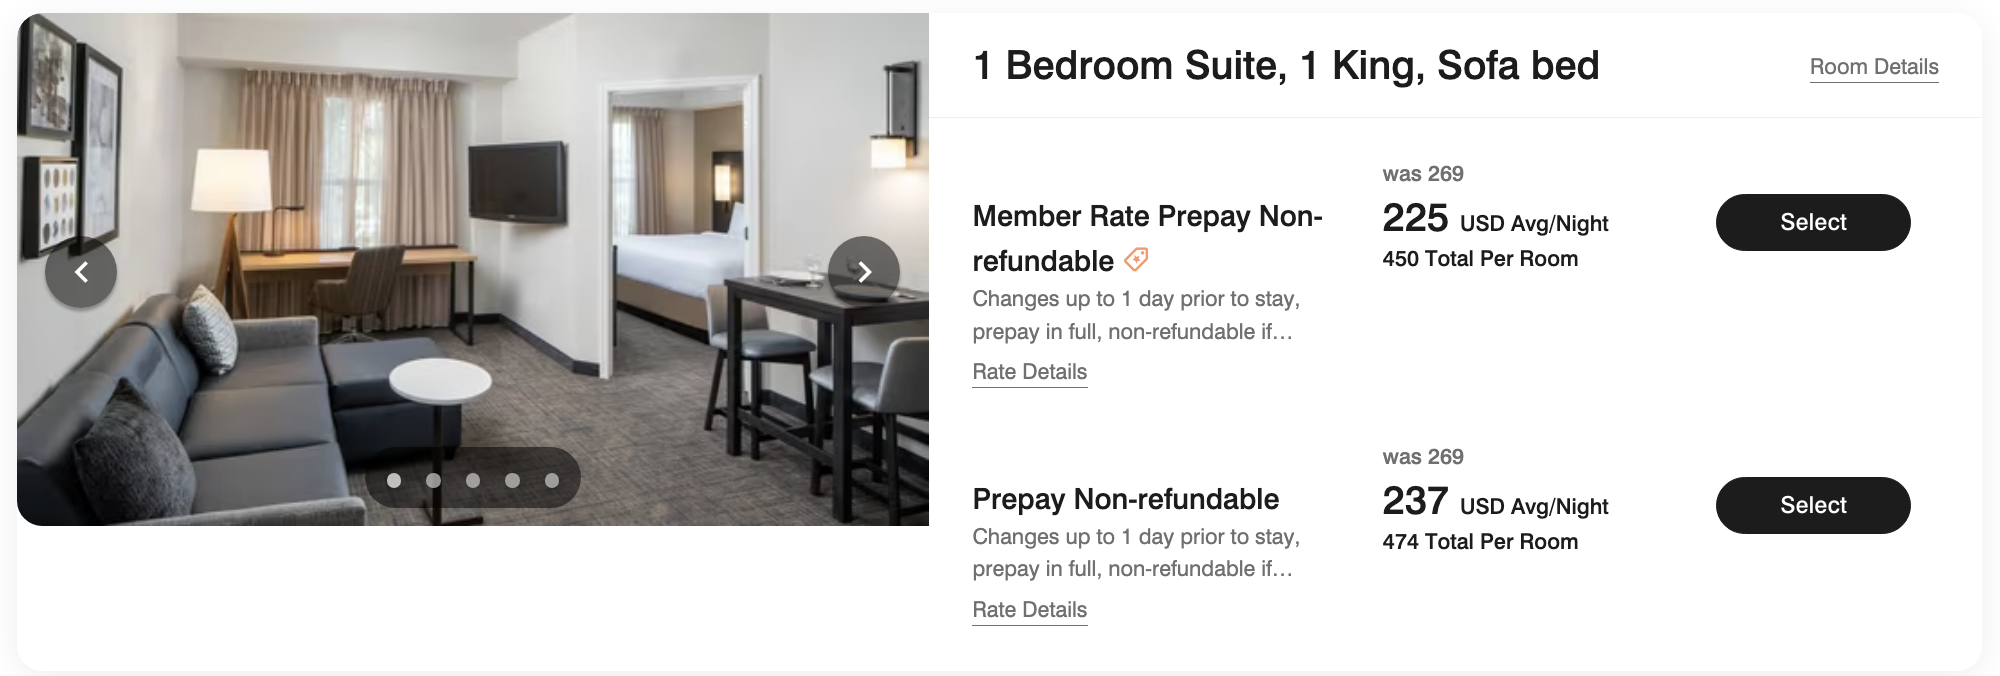 a screenshot of a hotel suite